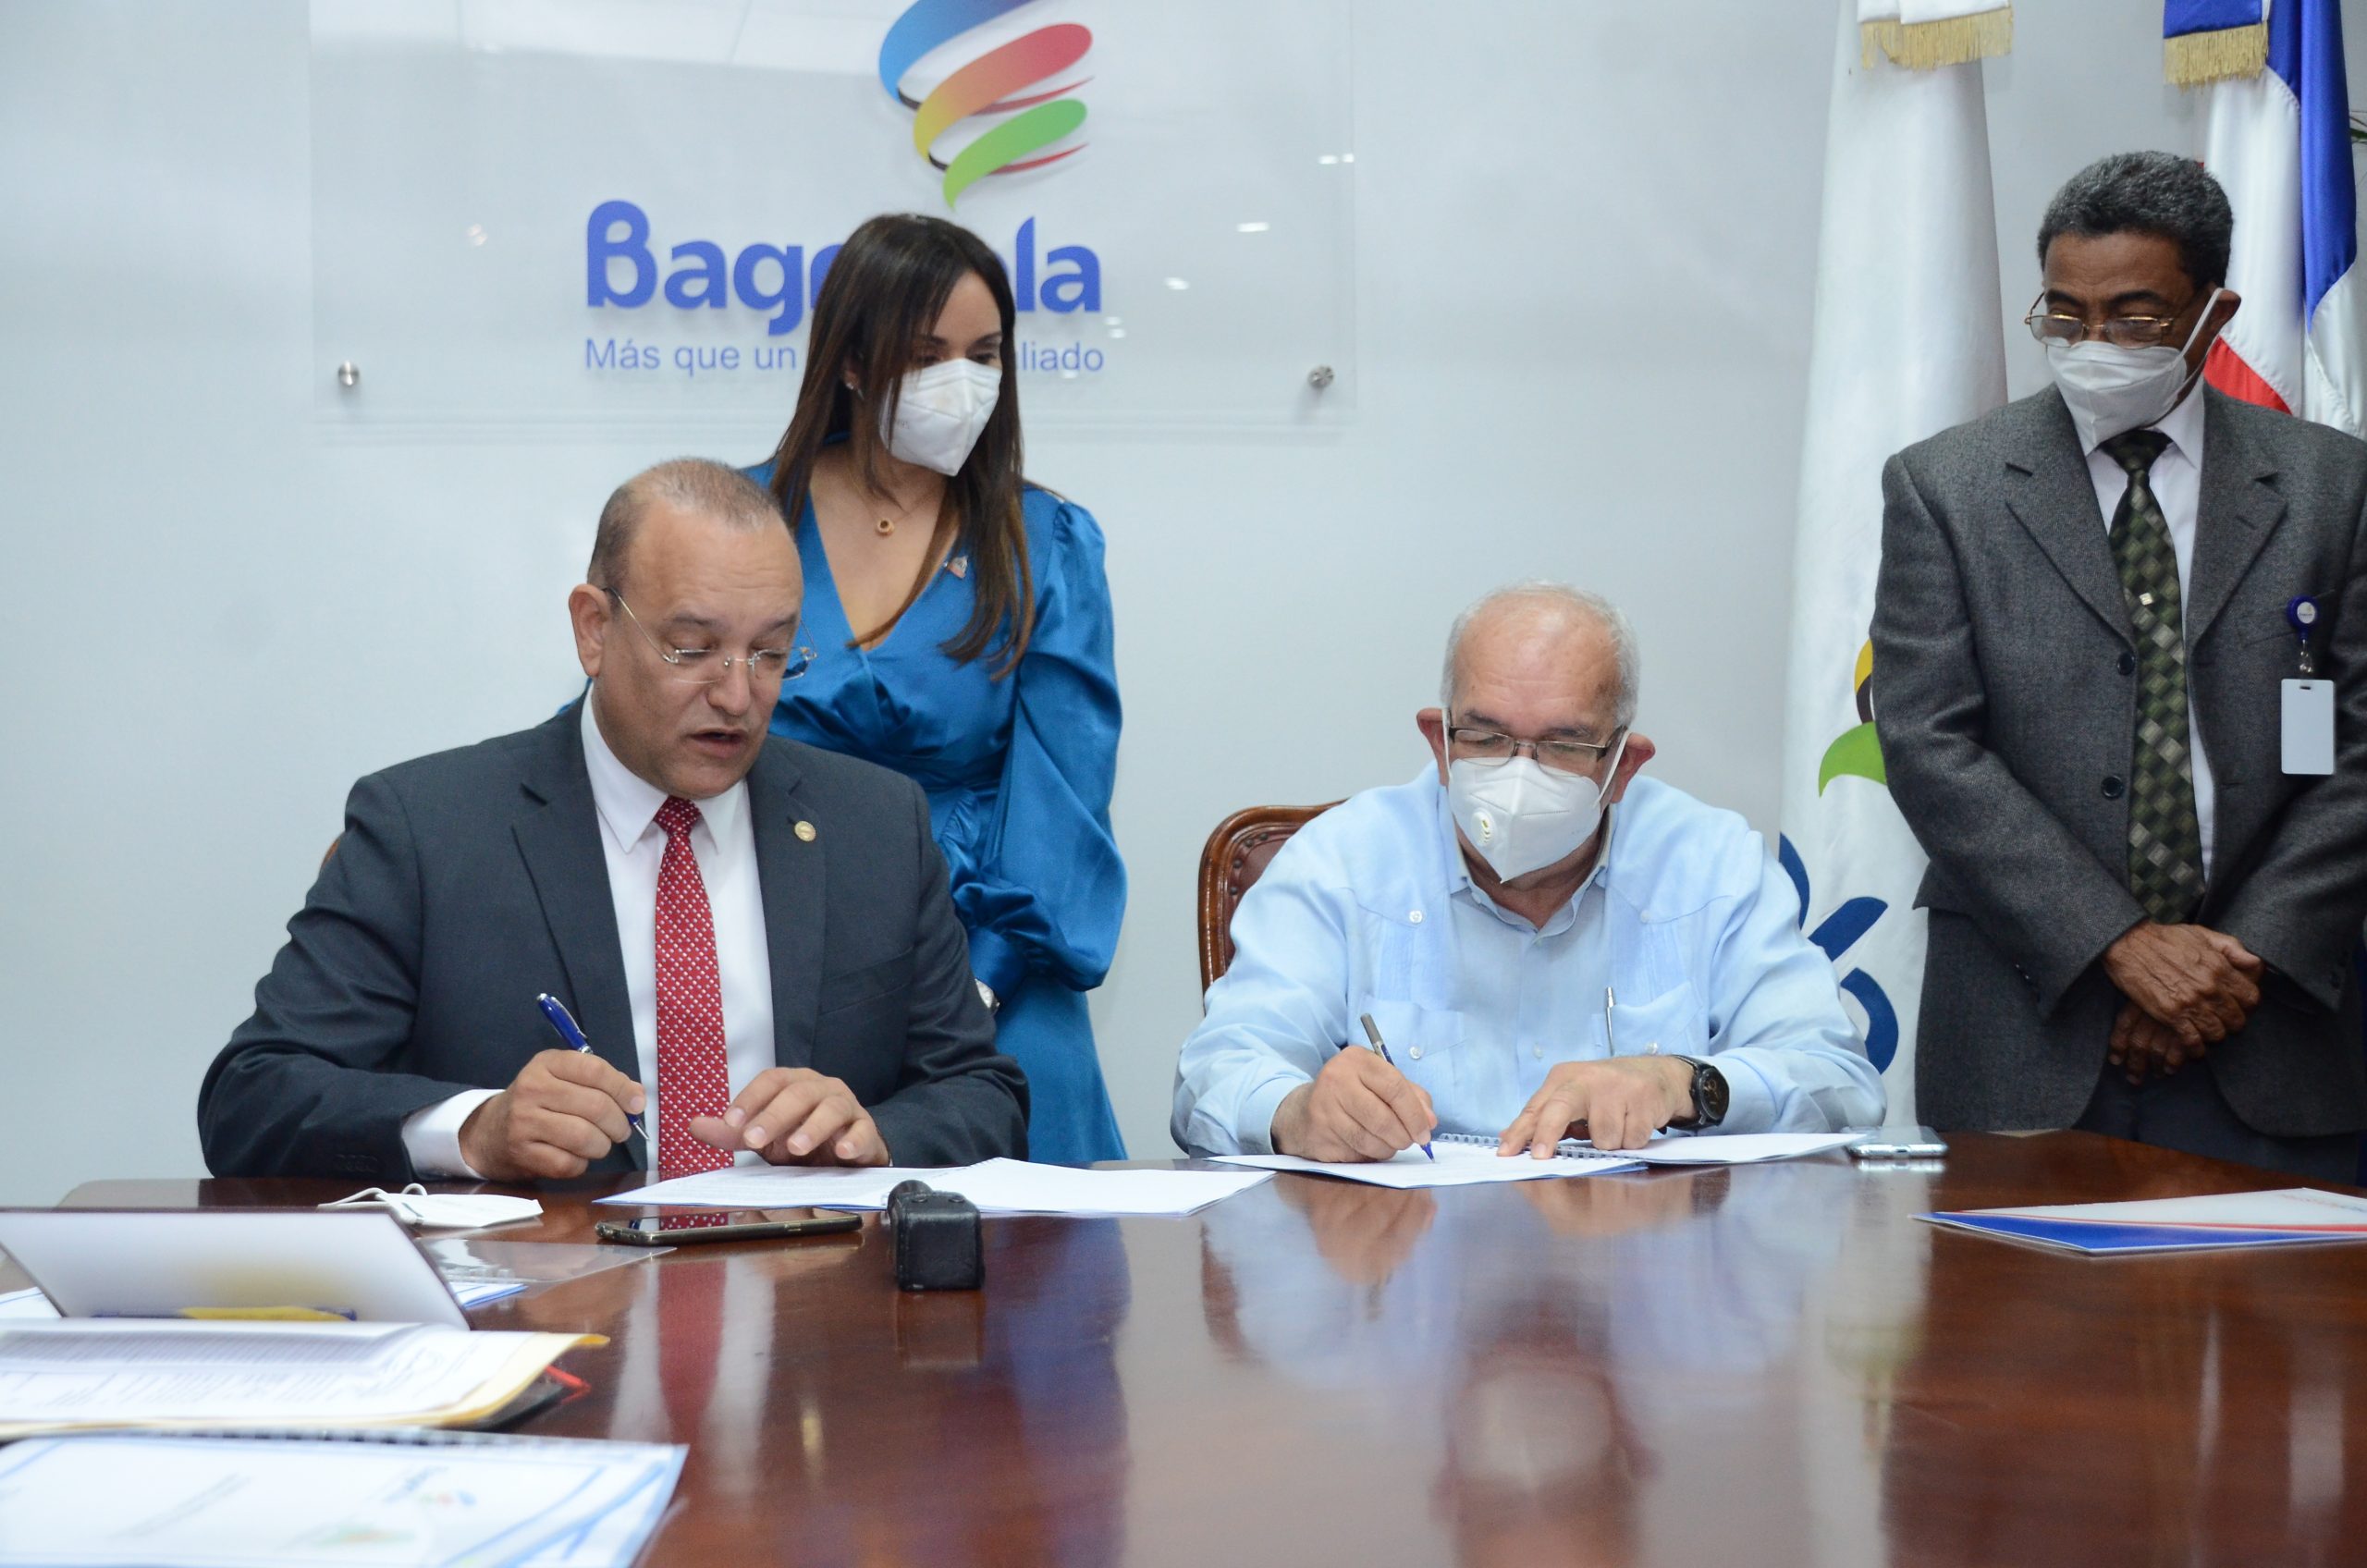 El Bagrícola y Proindustria firman acuerdo para respaldar las industrias del sector agropecuario